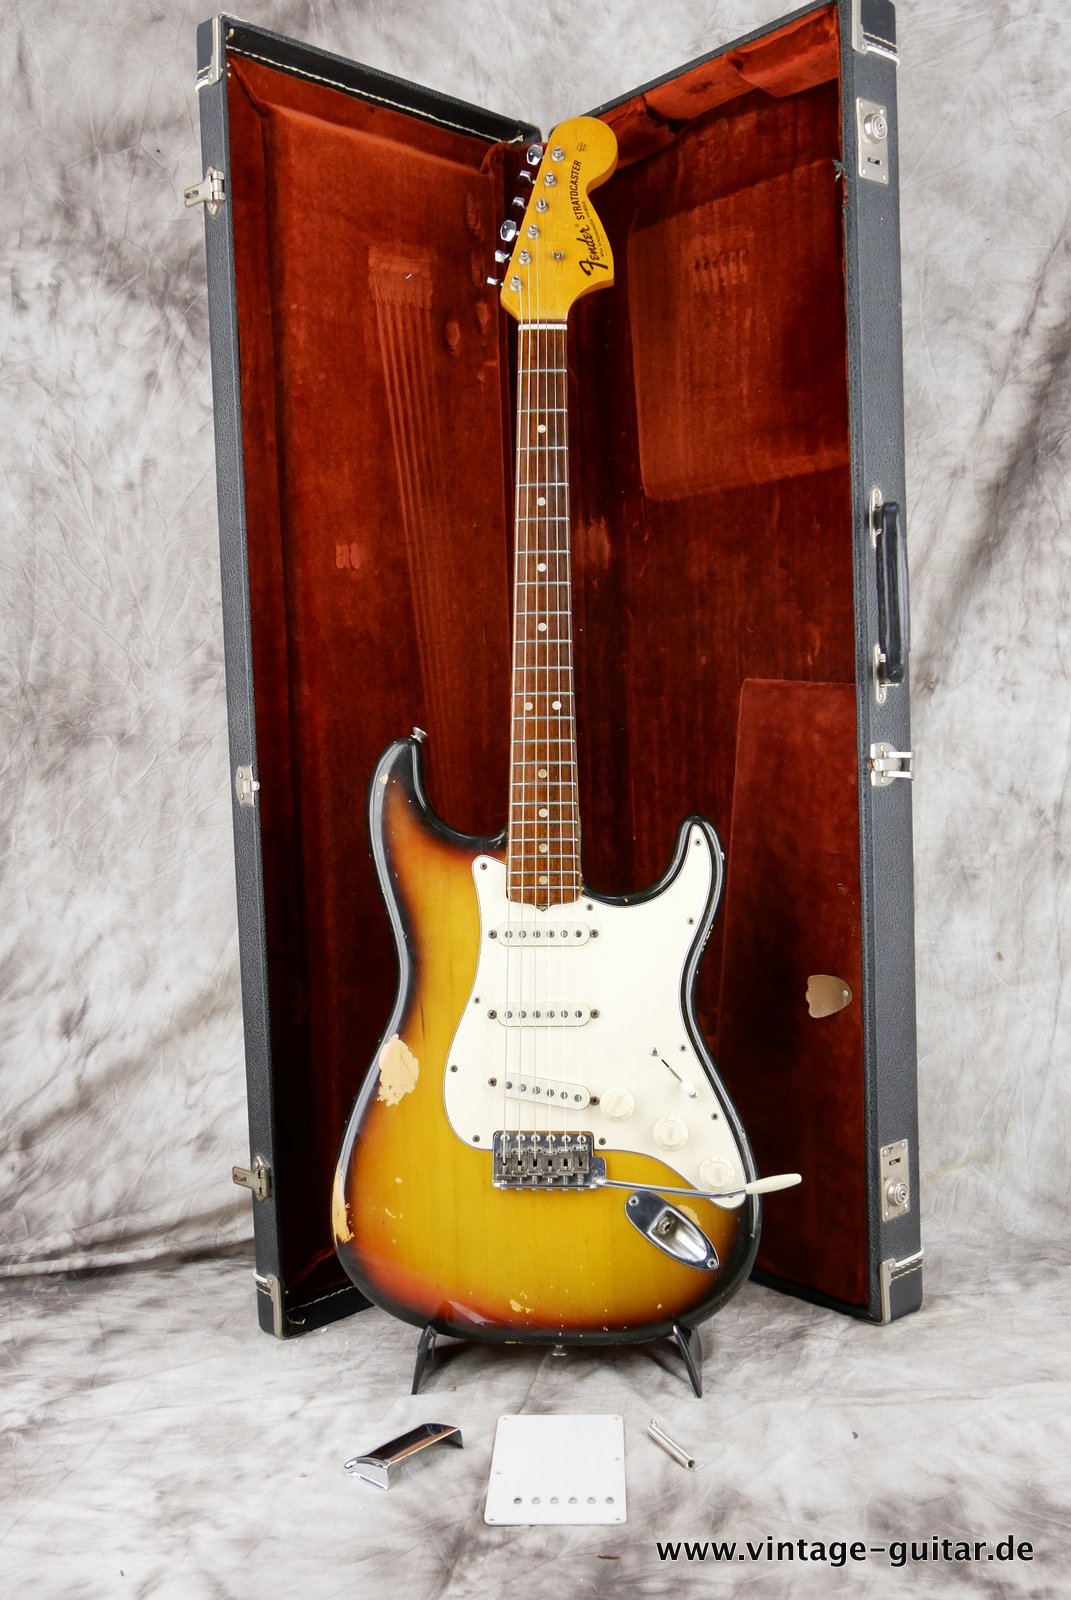 Fender-Stratocaster-1972-sunburst-4-hole-033.JPG